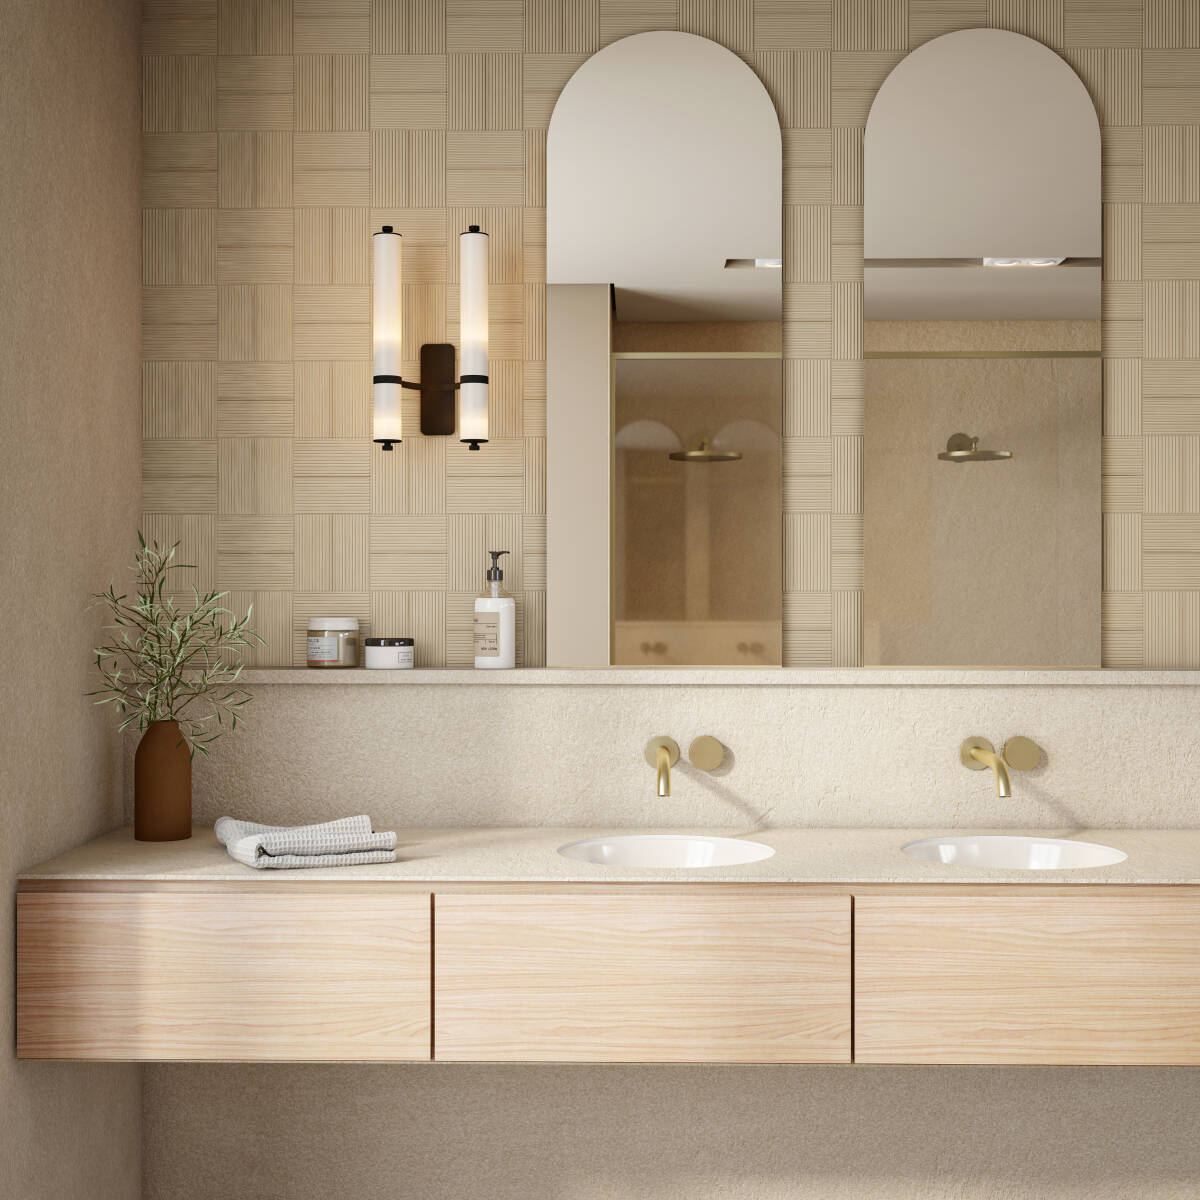 Os banheiros também podem ser decorados com tons terrosos. Mas como tendem a ser ambientes pequenos, prefira as cores mais claras e brinque com as texturas, inclusive nos revestimentos